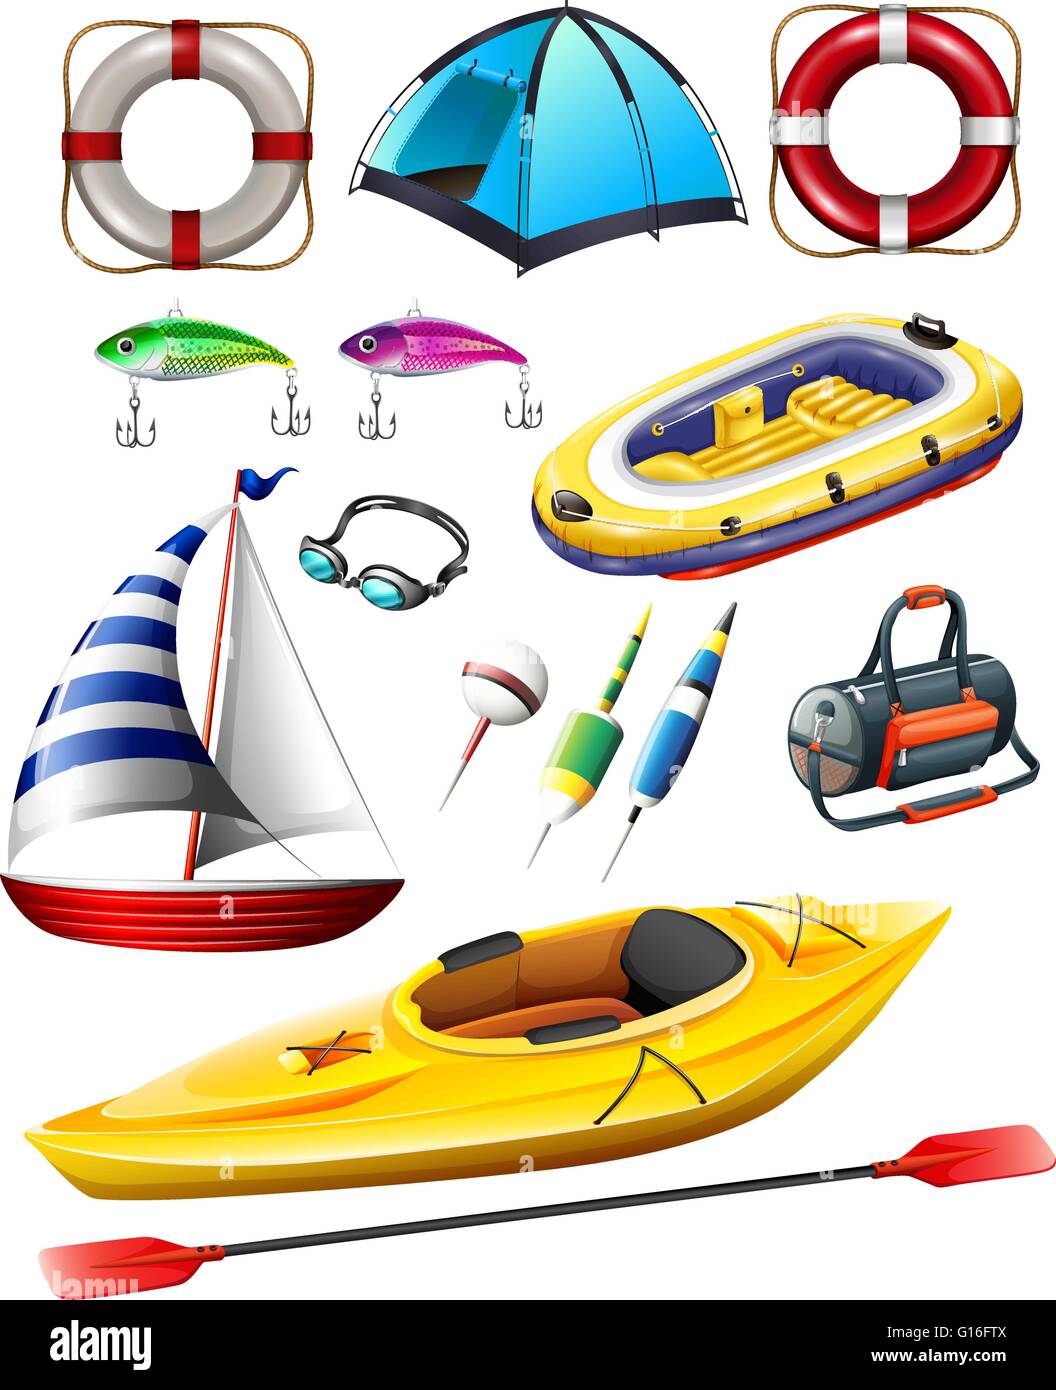 Angeln-Ausrüstungen und Boote illustration Stock Vektor